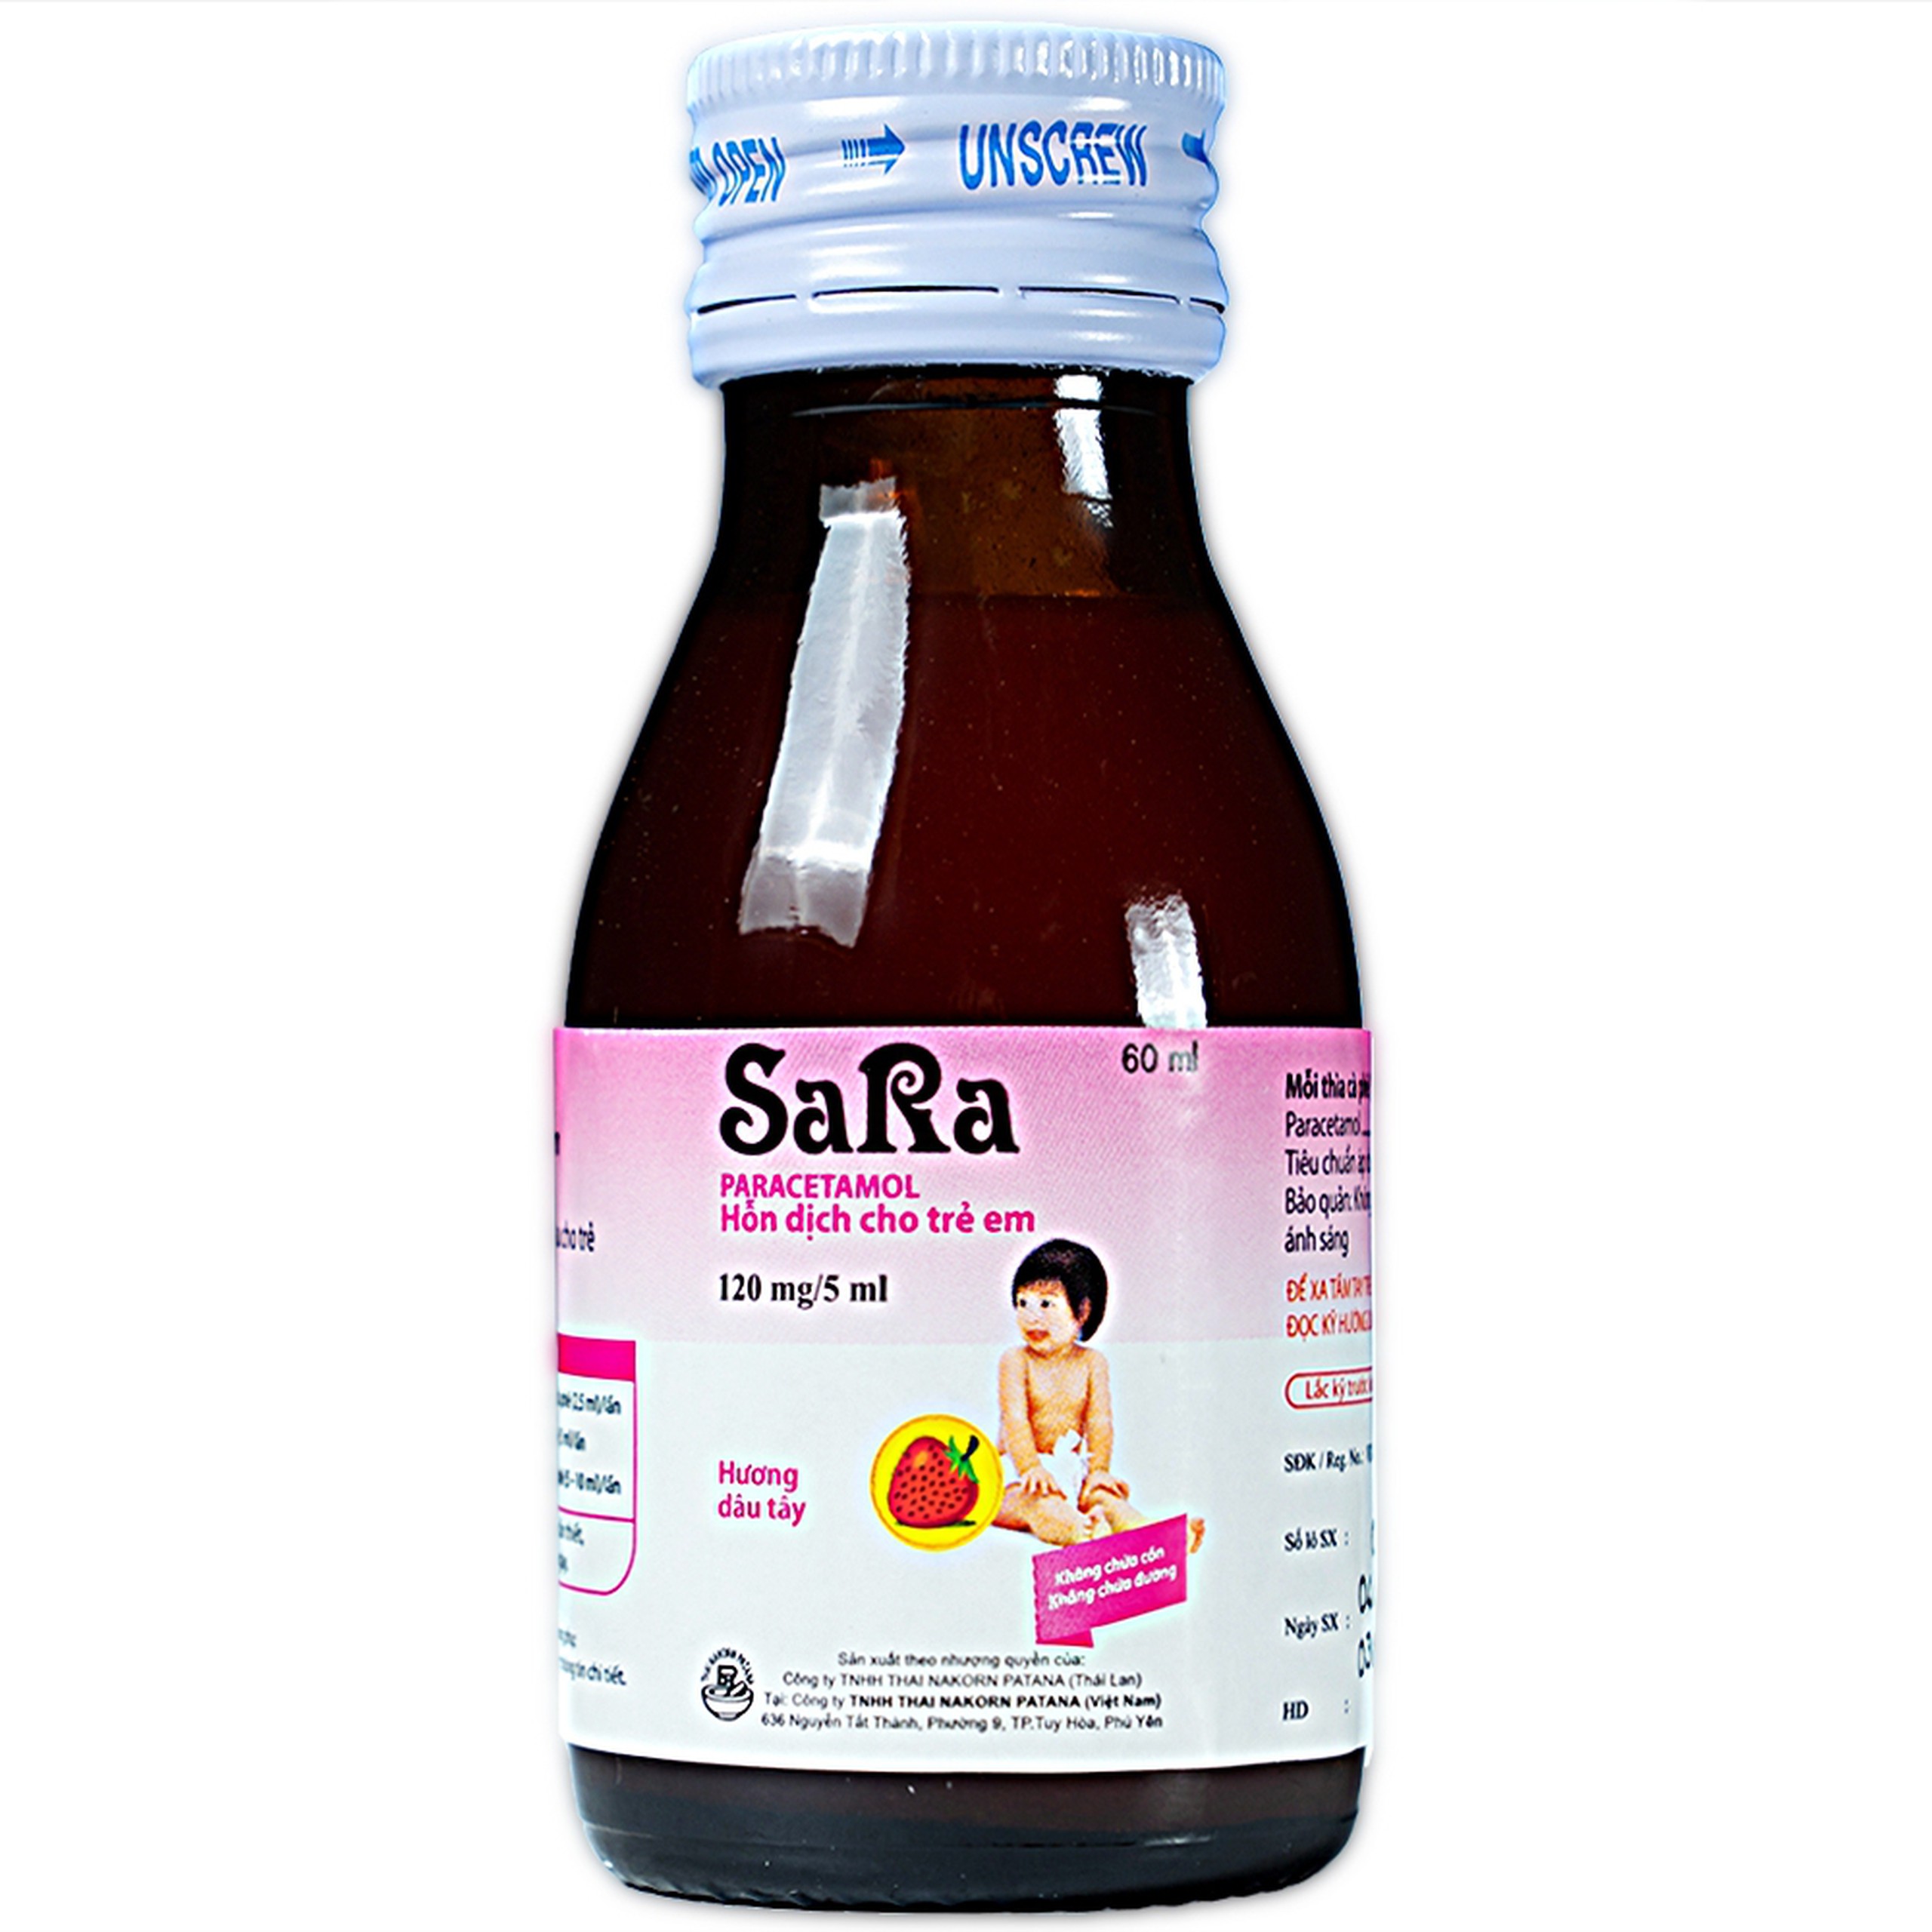 Thuốc Sara 120mg/5ml Thai Nakorn Patana hương dâu tây hạ sốt, giảm đau cho trẻ (60ml)